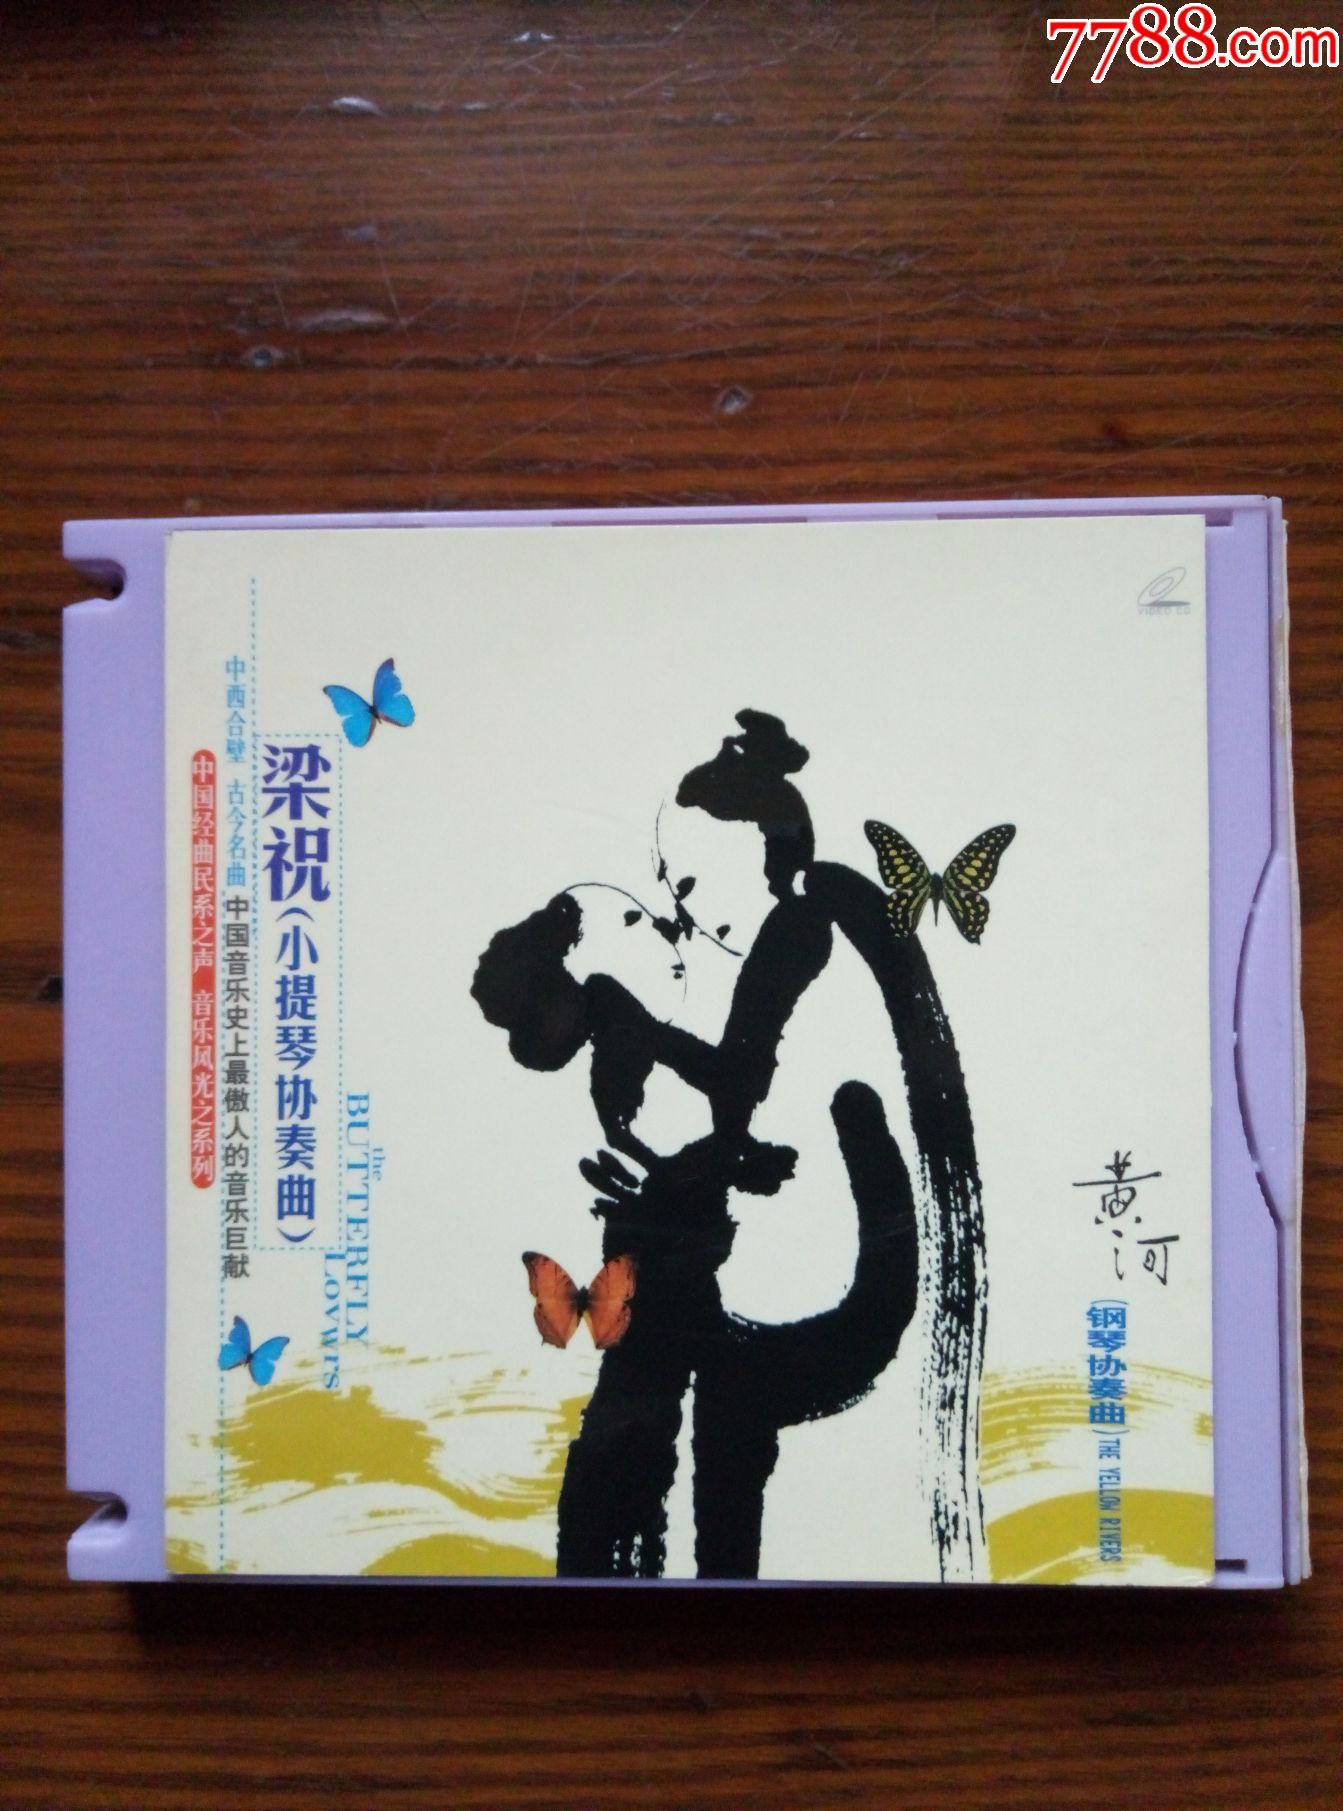 VCD、梁祝-小提琴协奏曲-价格:8.0000元-se5